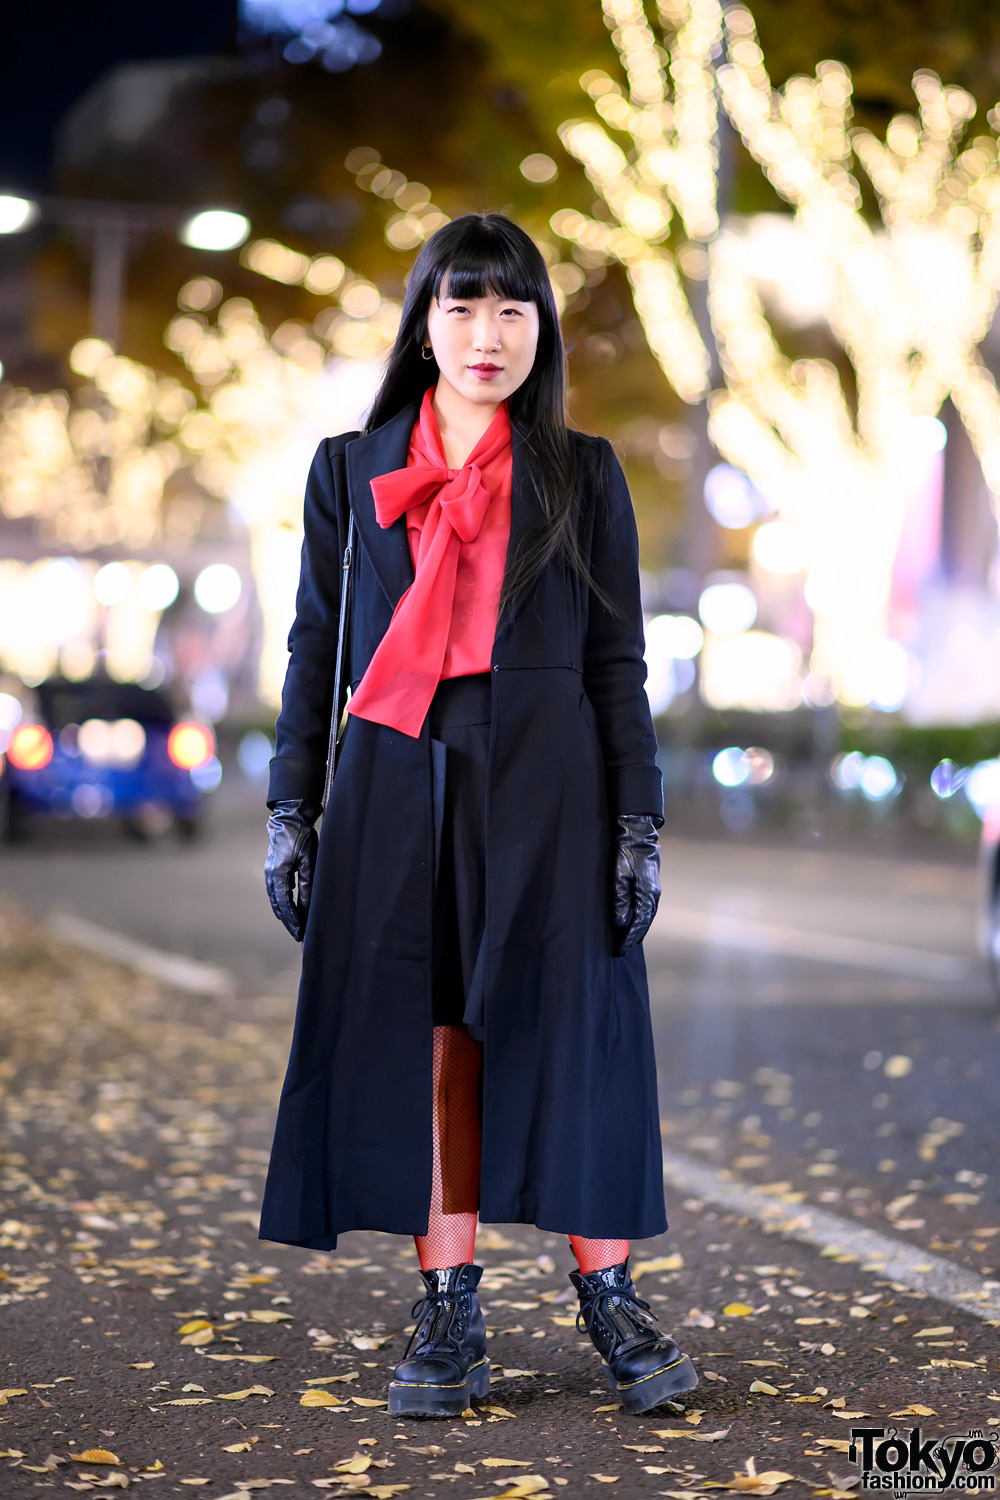 Harajuku Girl's Vintage Red & Black Street Style w/ Leather Gloves, Vivienne Westwood & Dr. Martens